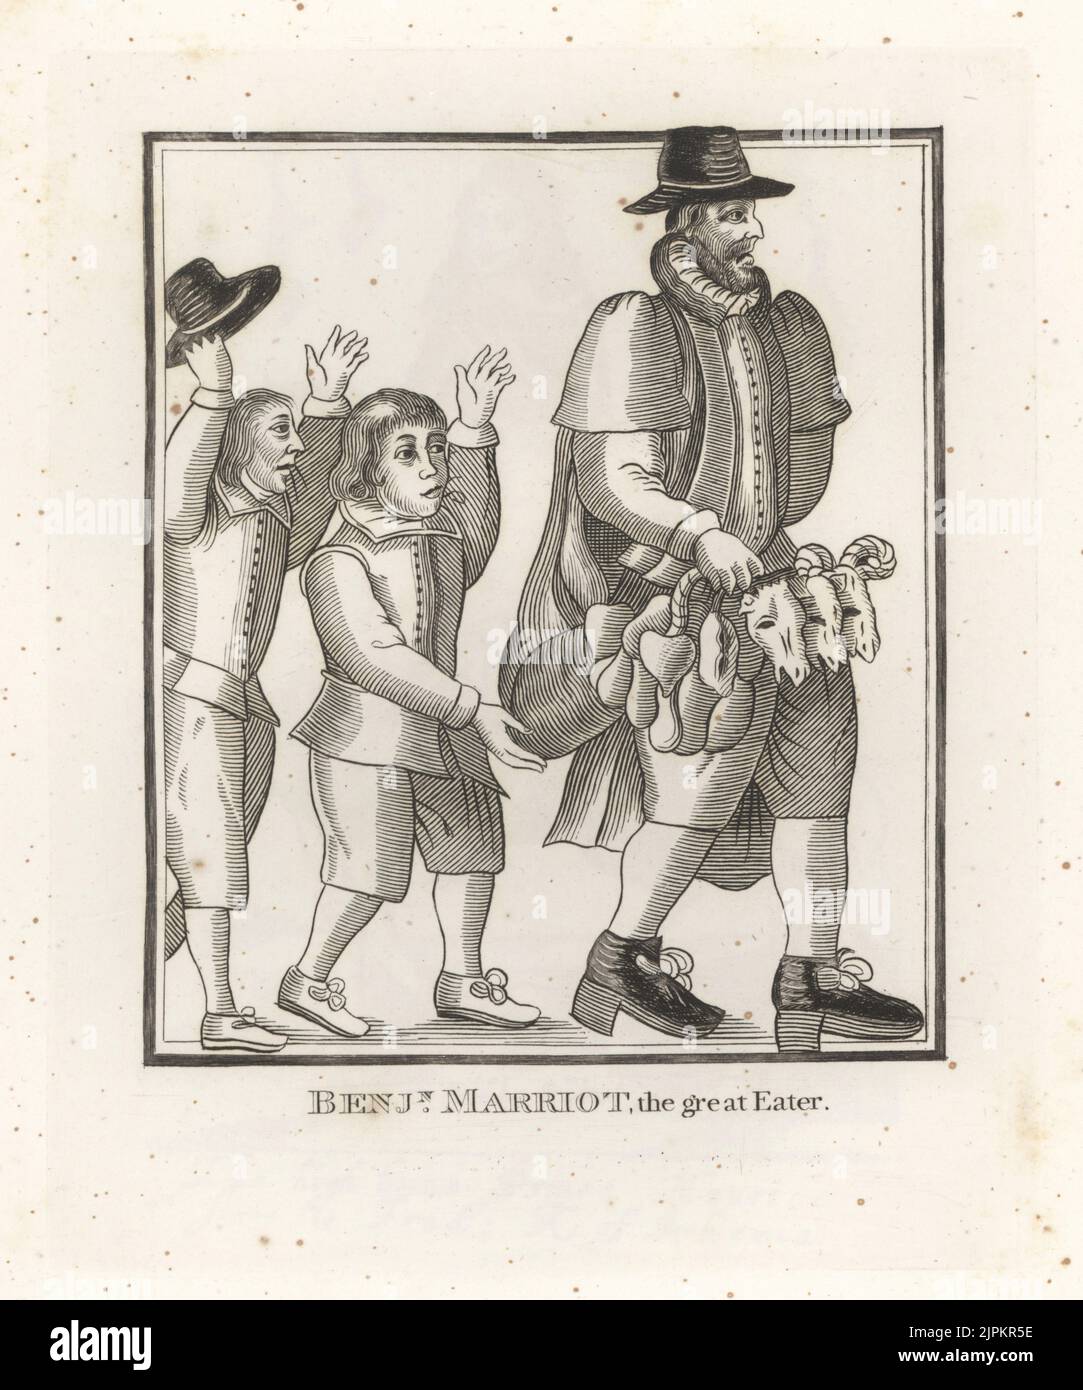 Benjamin Marriot (auch John oder William Marriott), englischer Anwalt und angeblicher Völlerei, starb 1653. Ein alter Mann, der drei Schafsköpfe, Herzen und Innereien trägt, wird von zwei Jungen gejagt. Aus einem seltenen Holzschnitt in George fidges diffamierender Broschüre der große Esser von Gray's Inn, 1652.. Stockfoto